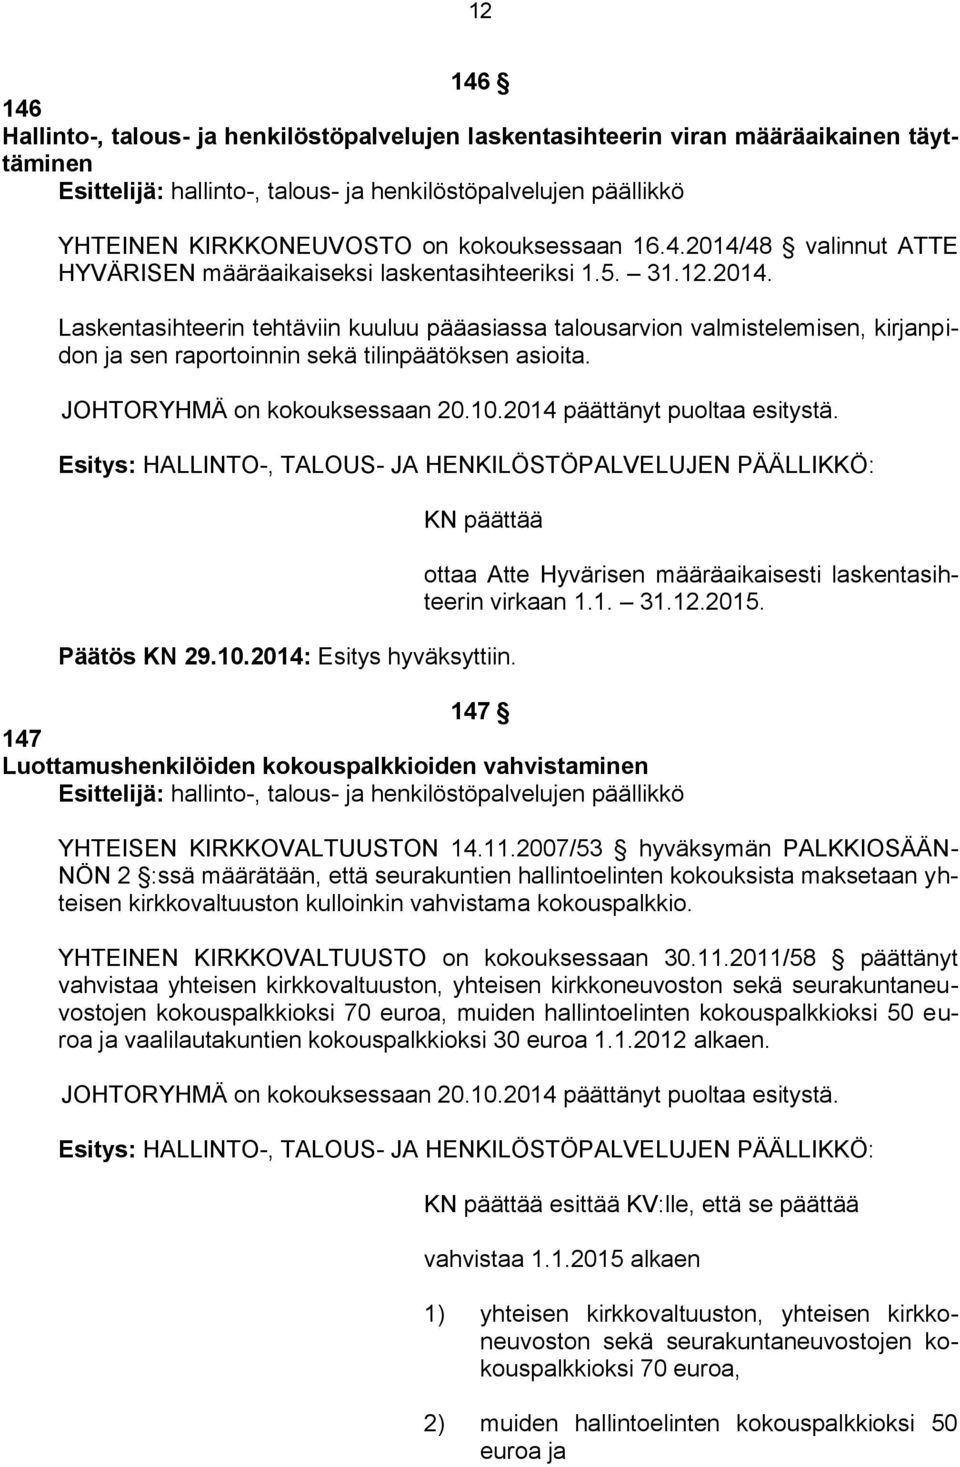 JOHTORYHMÄ on kokouksessaan 20.10.2014 päättänyt puoltaa esitystä. Esitys: HALLINTO-, TALOUS- JA HENKILÖSTÖPALVELUJEN PÄÄLLIKKÖ: KN päättää Päätös KN 29.10.2014: Esitys hyväksyttiin.